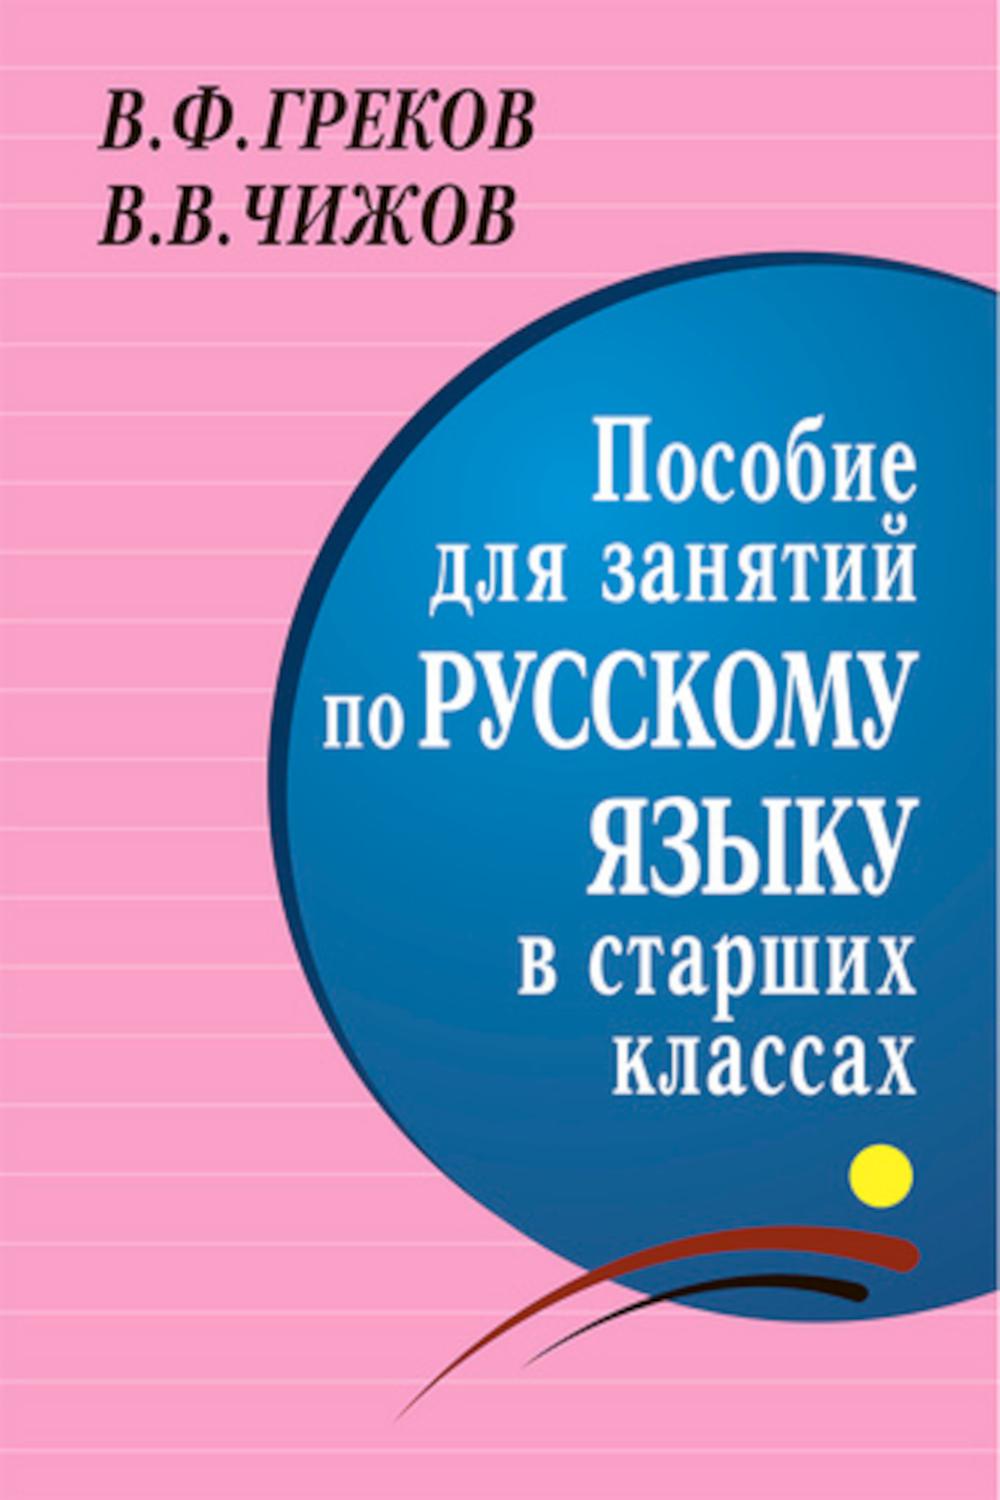 фото Книга пособие для занятий по русскому языку в старших классах мир и образование